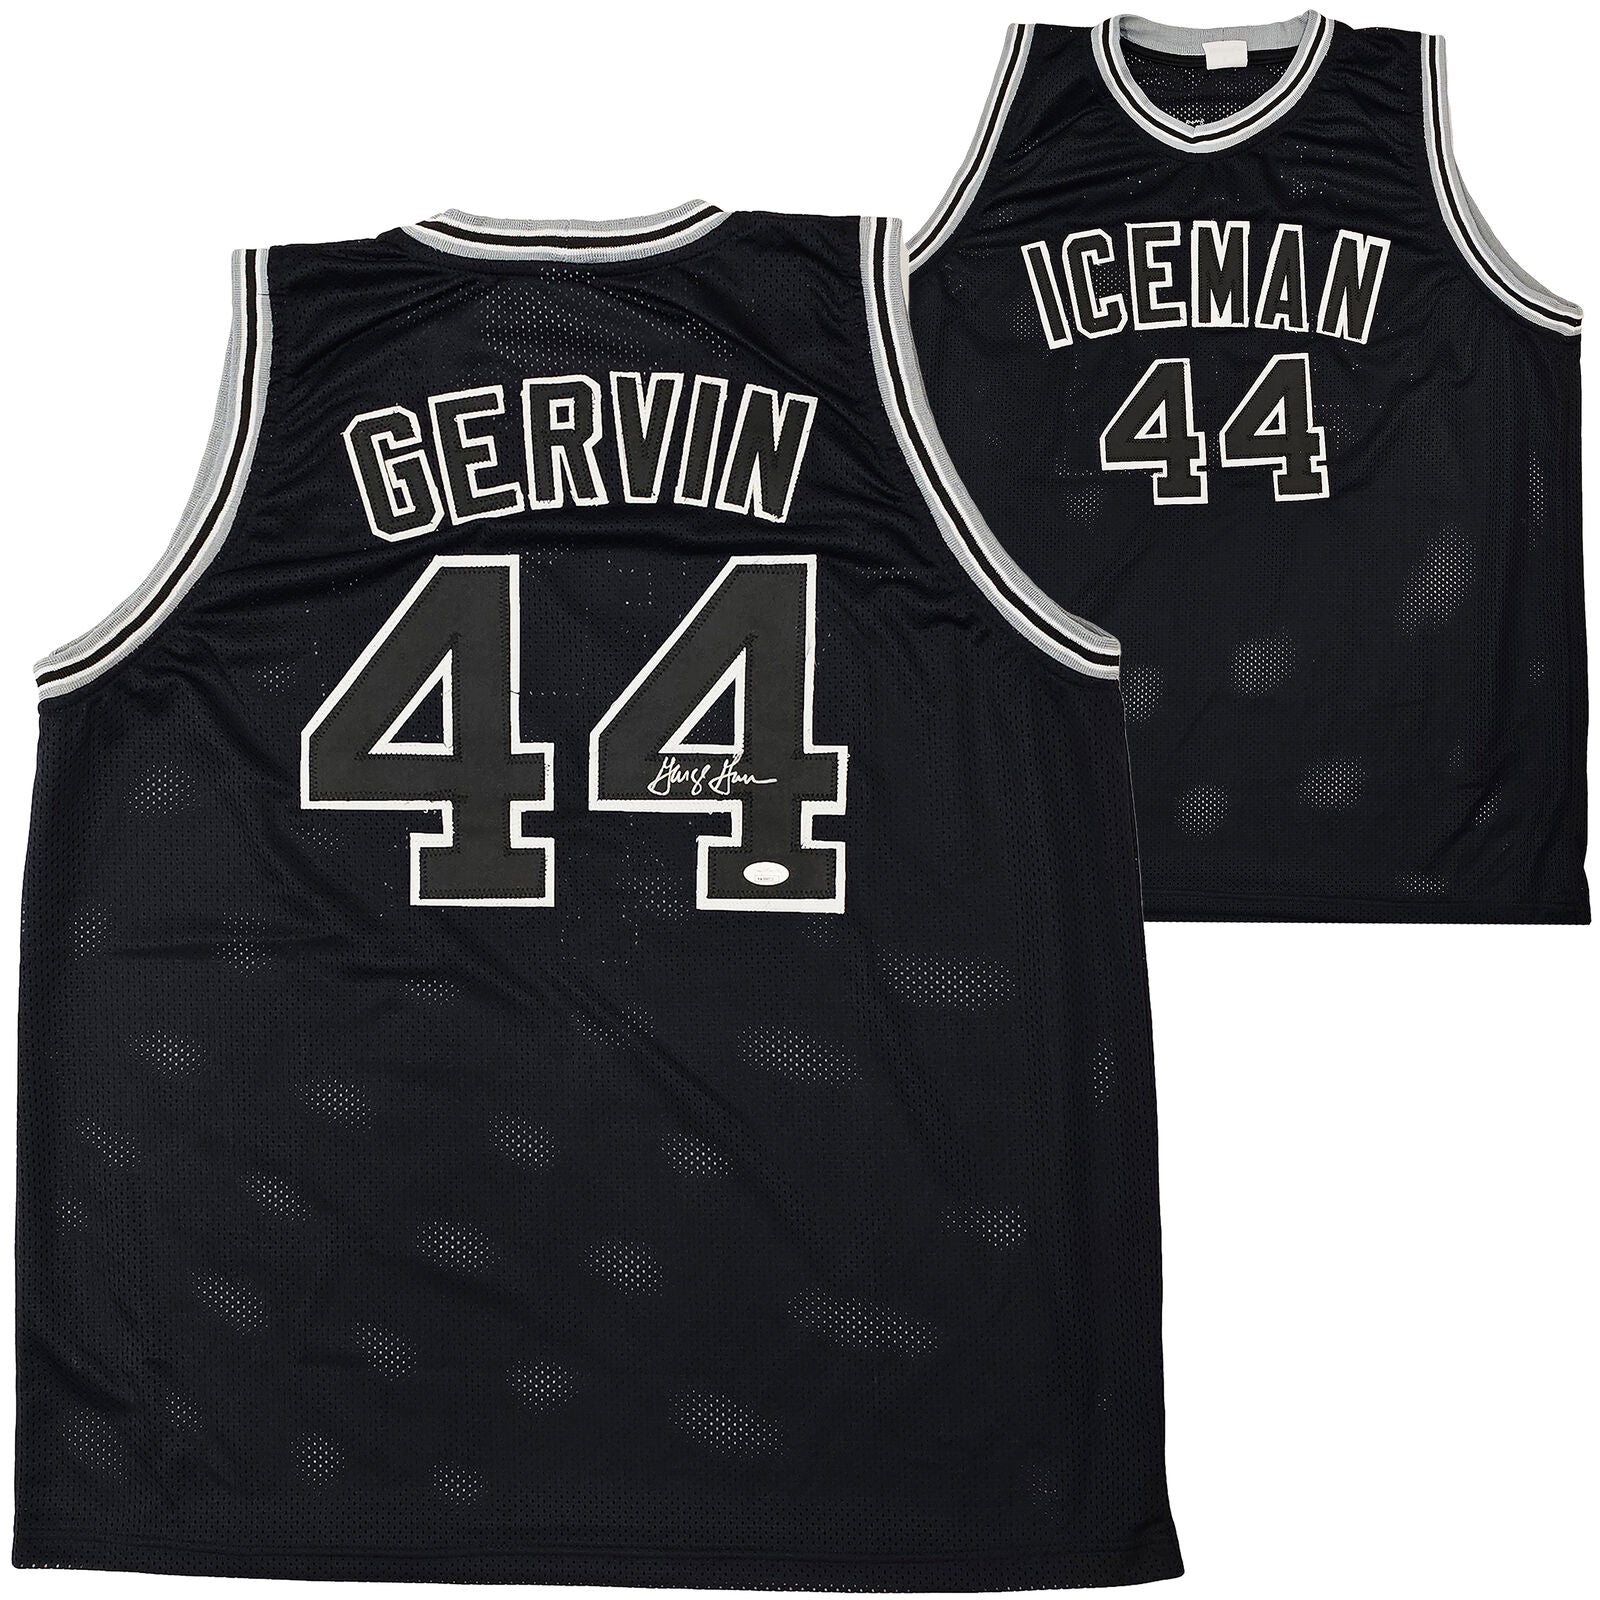 San Antonio Spurs George Gervin Autographed White Jersey JSA